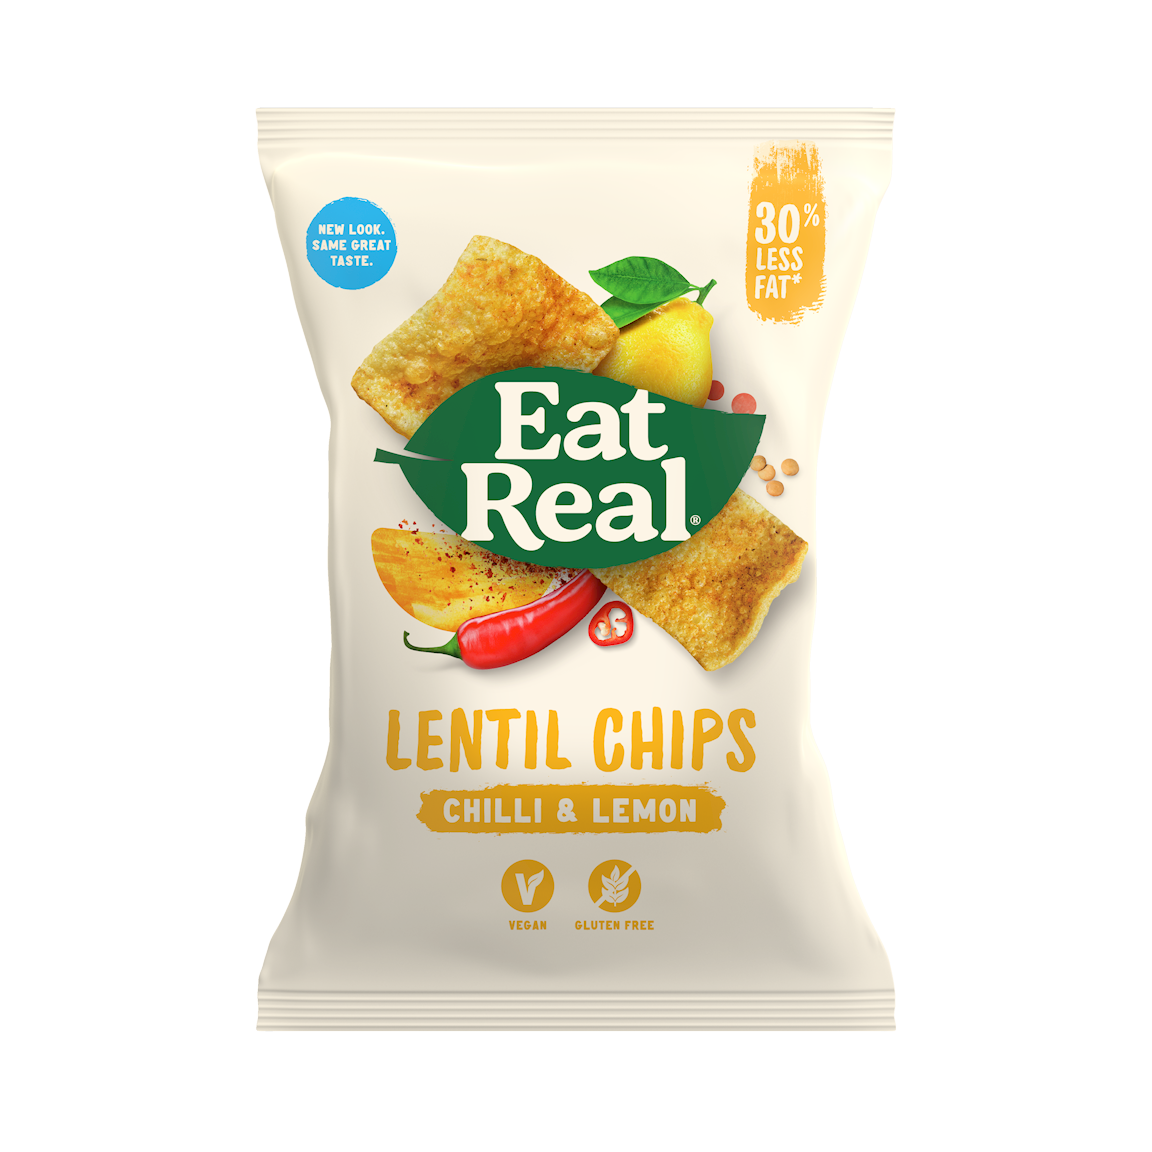 Eat Real Lentil Chips Chilli & Lemon 113gm Gluten Free and Vegan